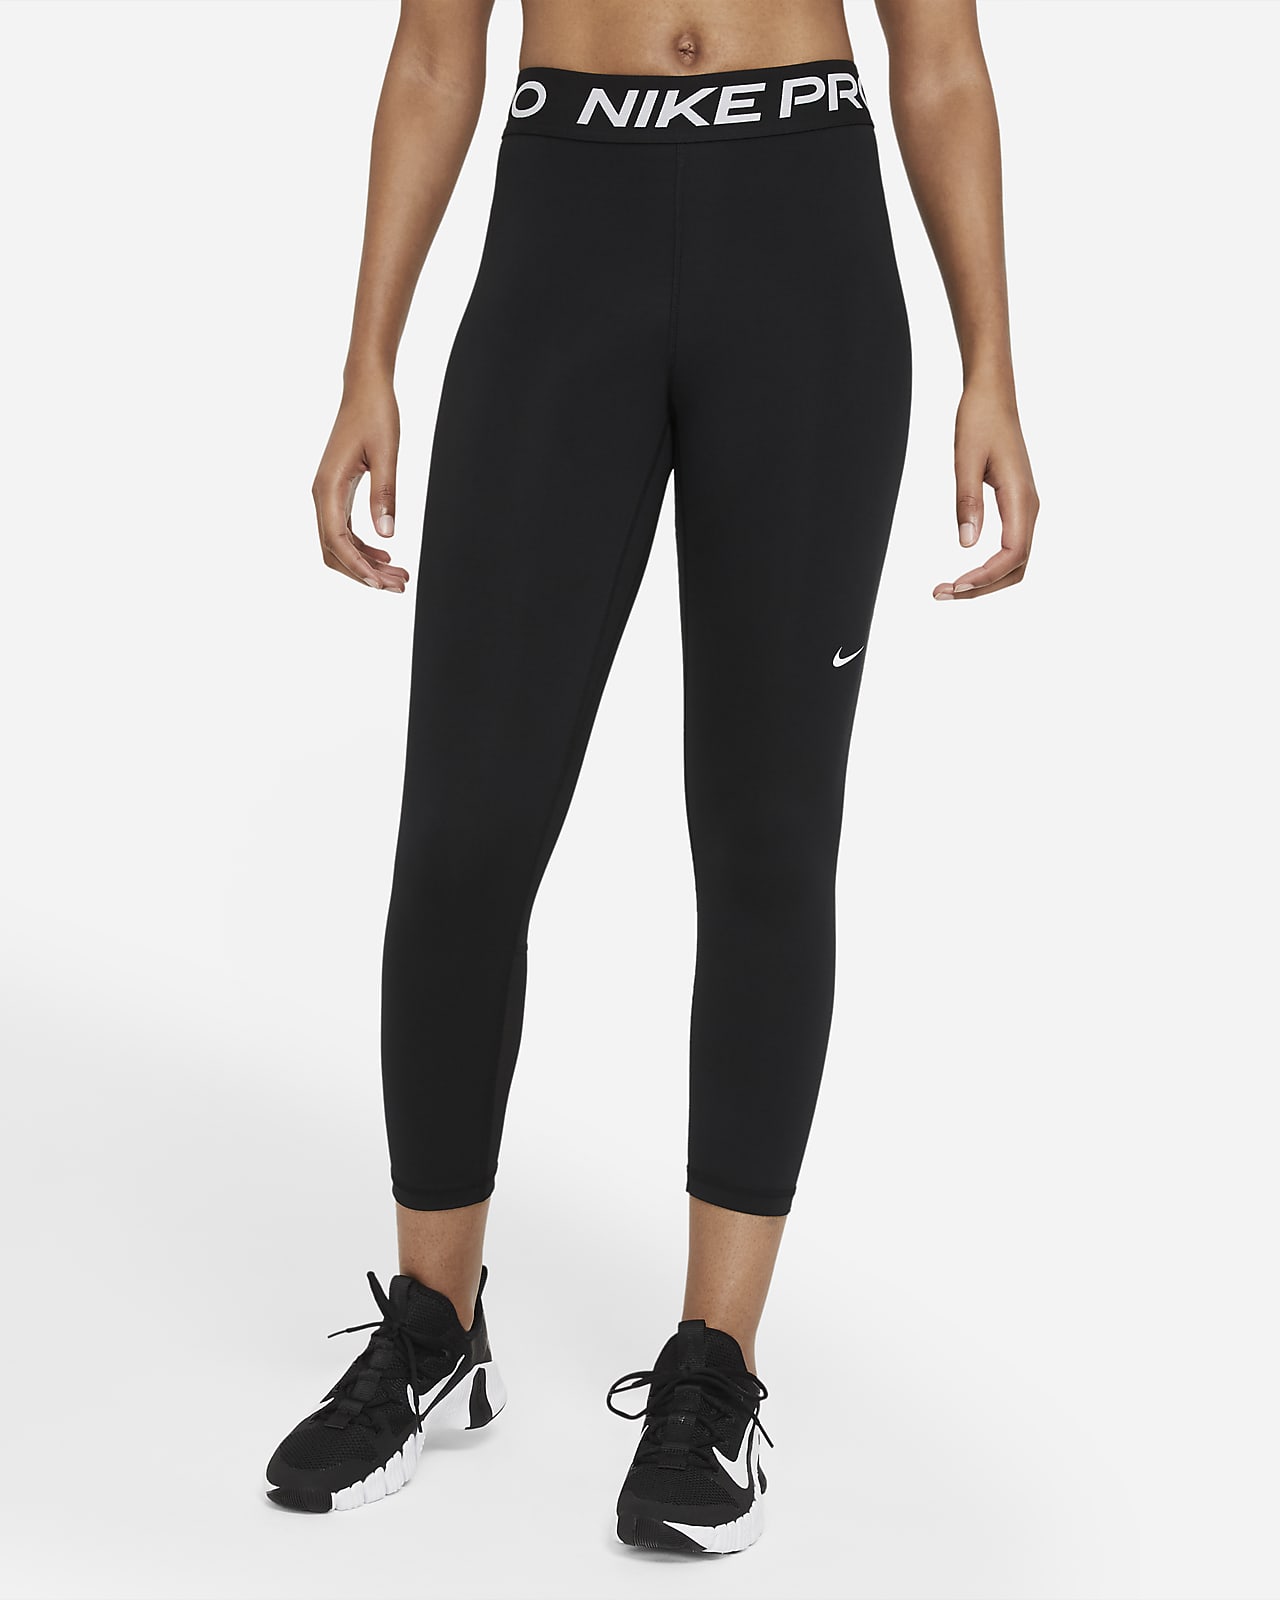 Legging court taille mi-haute Nike Pro 365 pour Femme